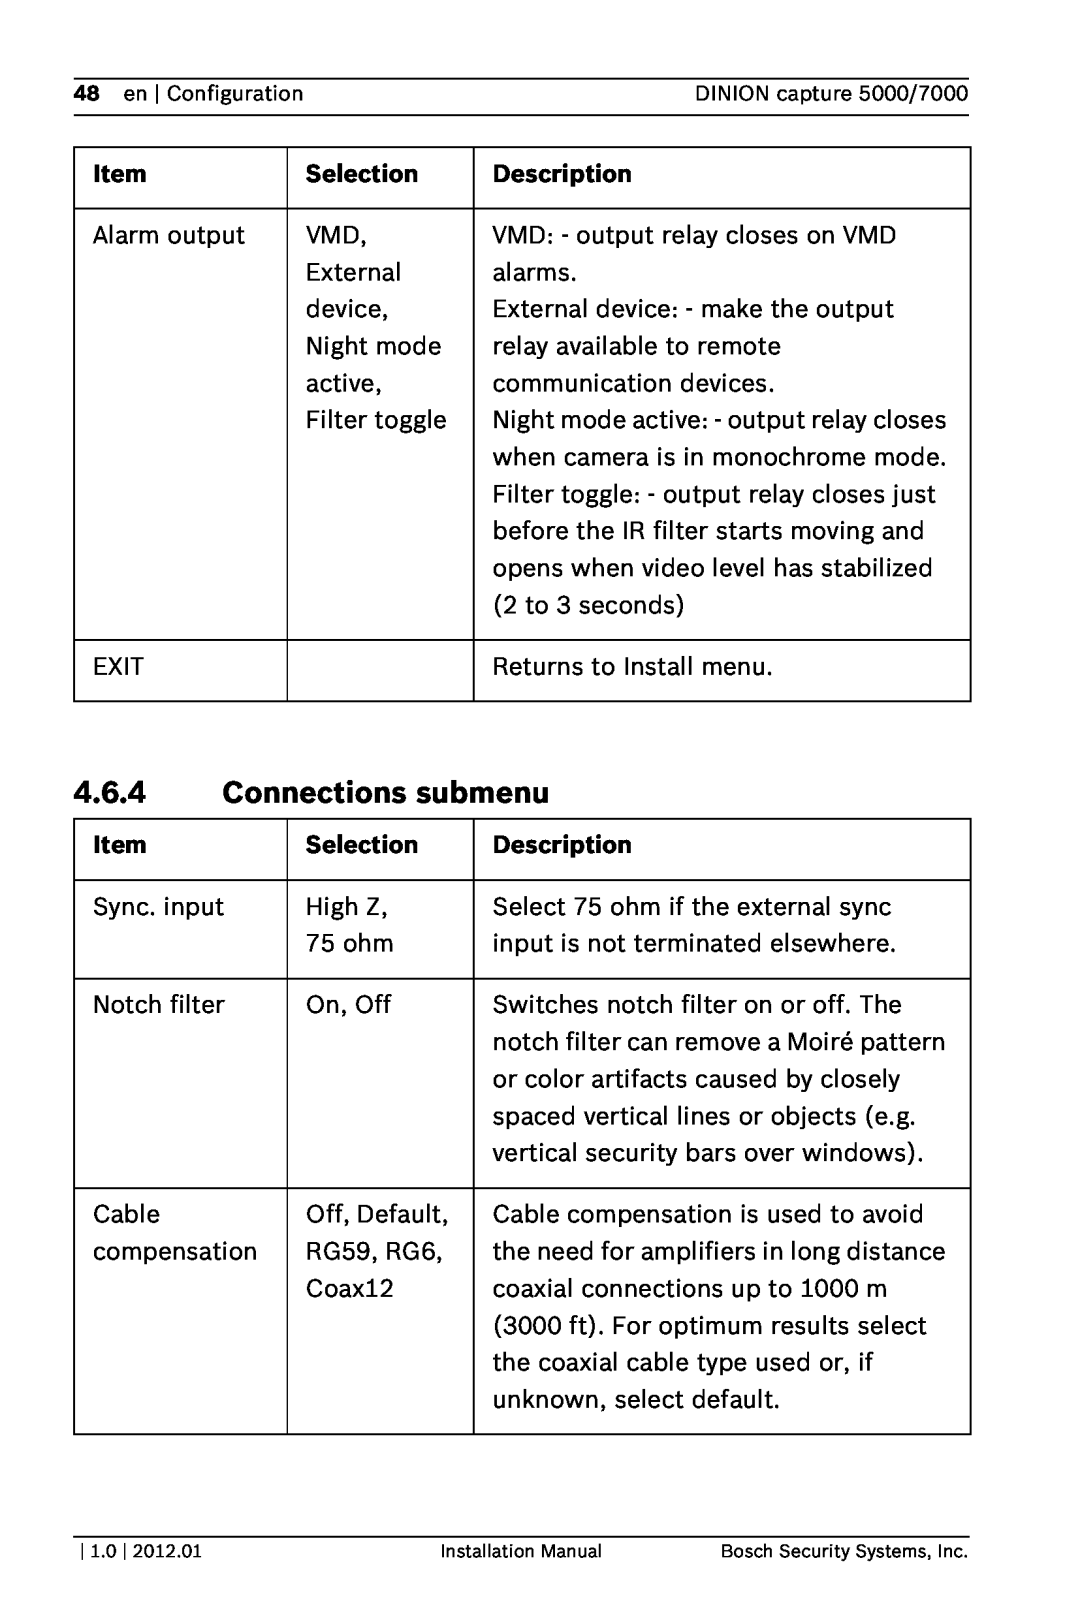 Bosch Appliances 5000, 7000 installation manual 4.6.4Connections submenu, Item, Selection, Description 